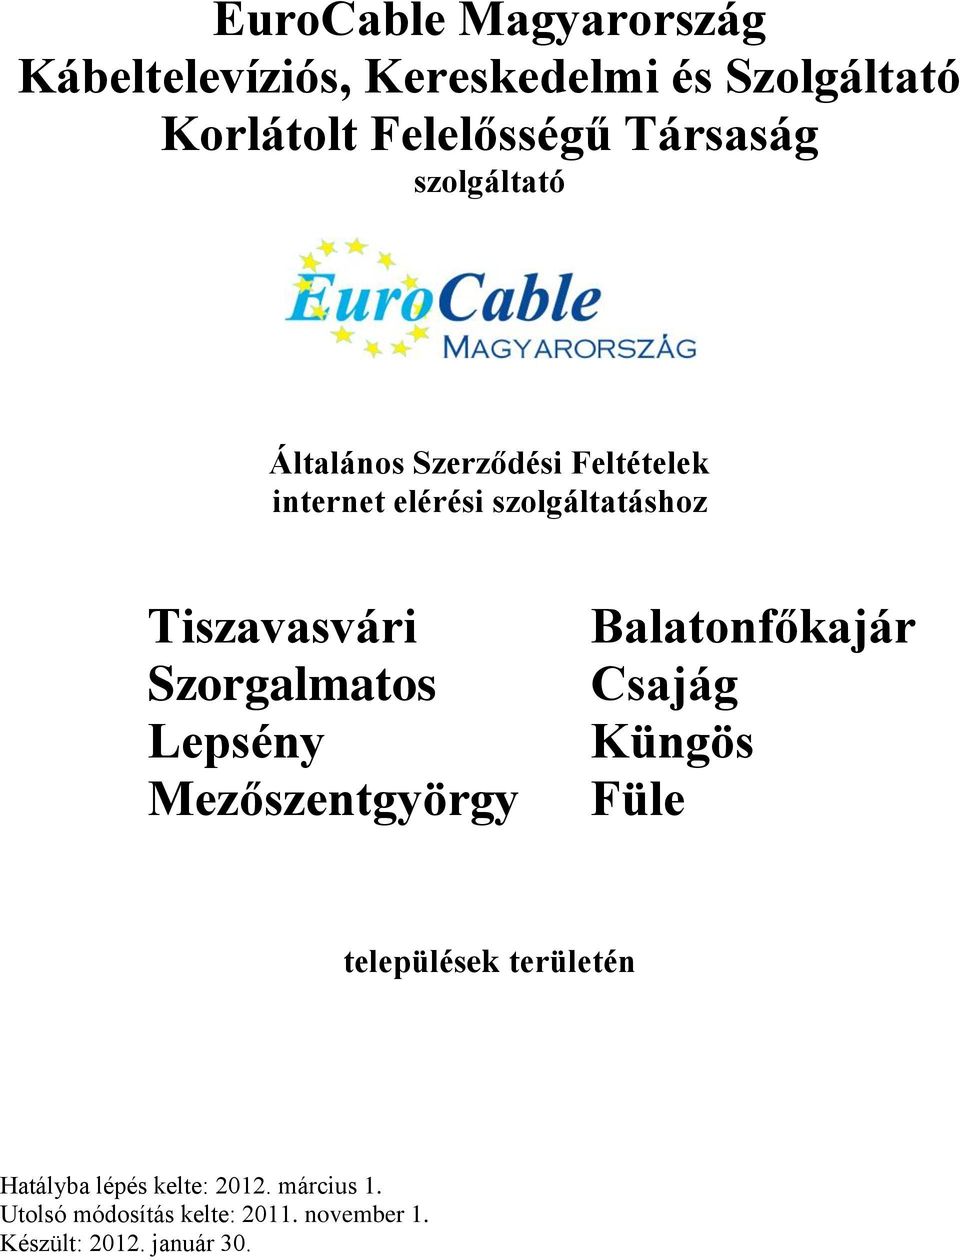 EuroCable Magyarország Kábeltelevíziós, Kereskedelmi és Szolgáltató  Korlátolt Felelősségű Társaság szolgáltató - PDF Ingyenes letöltés